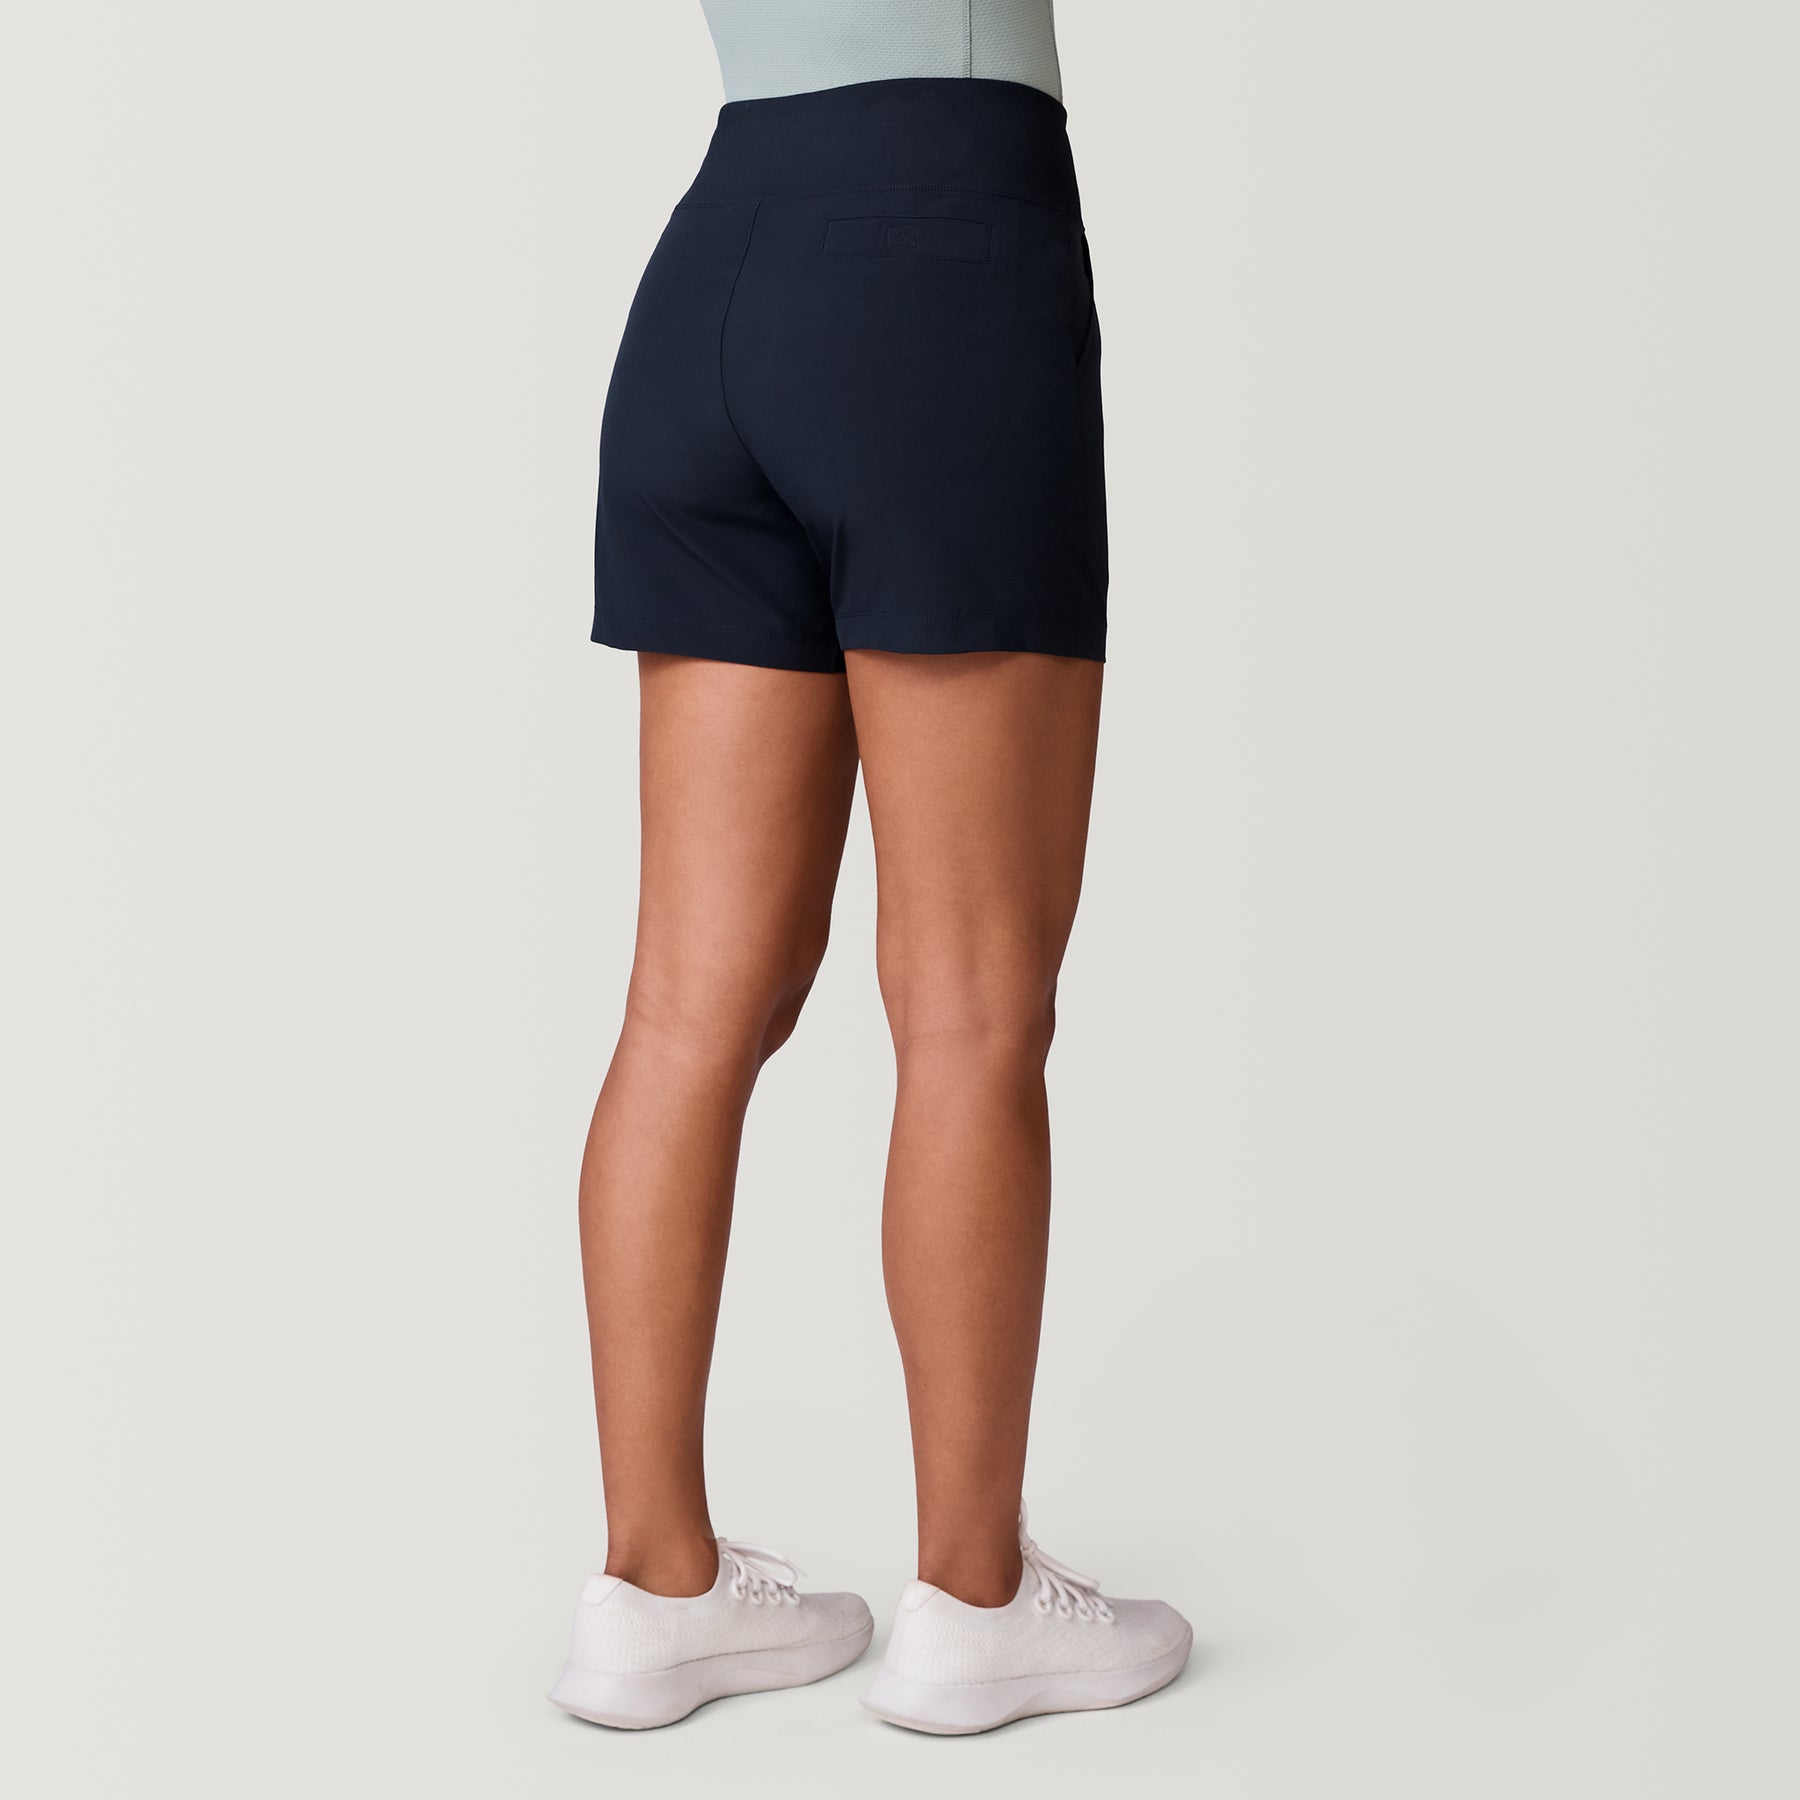 NEW!! Tuff Athletics Women's Drawstring Nylon Hybrid Shorts Variety #120